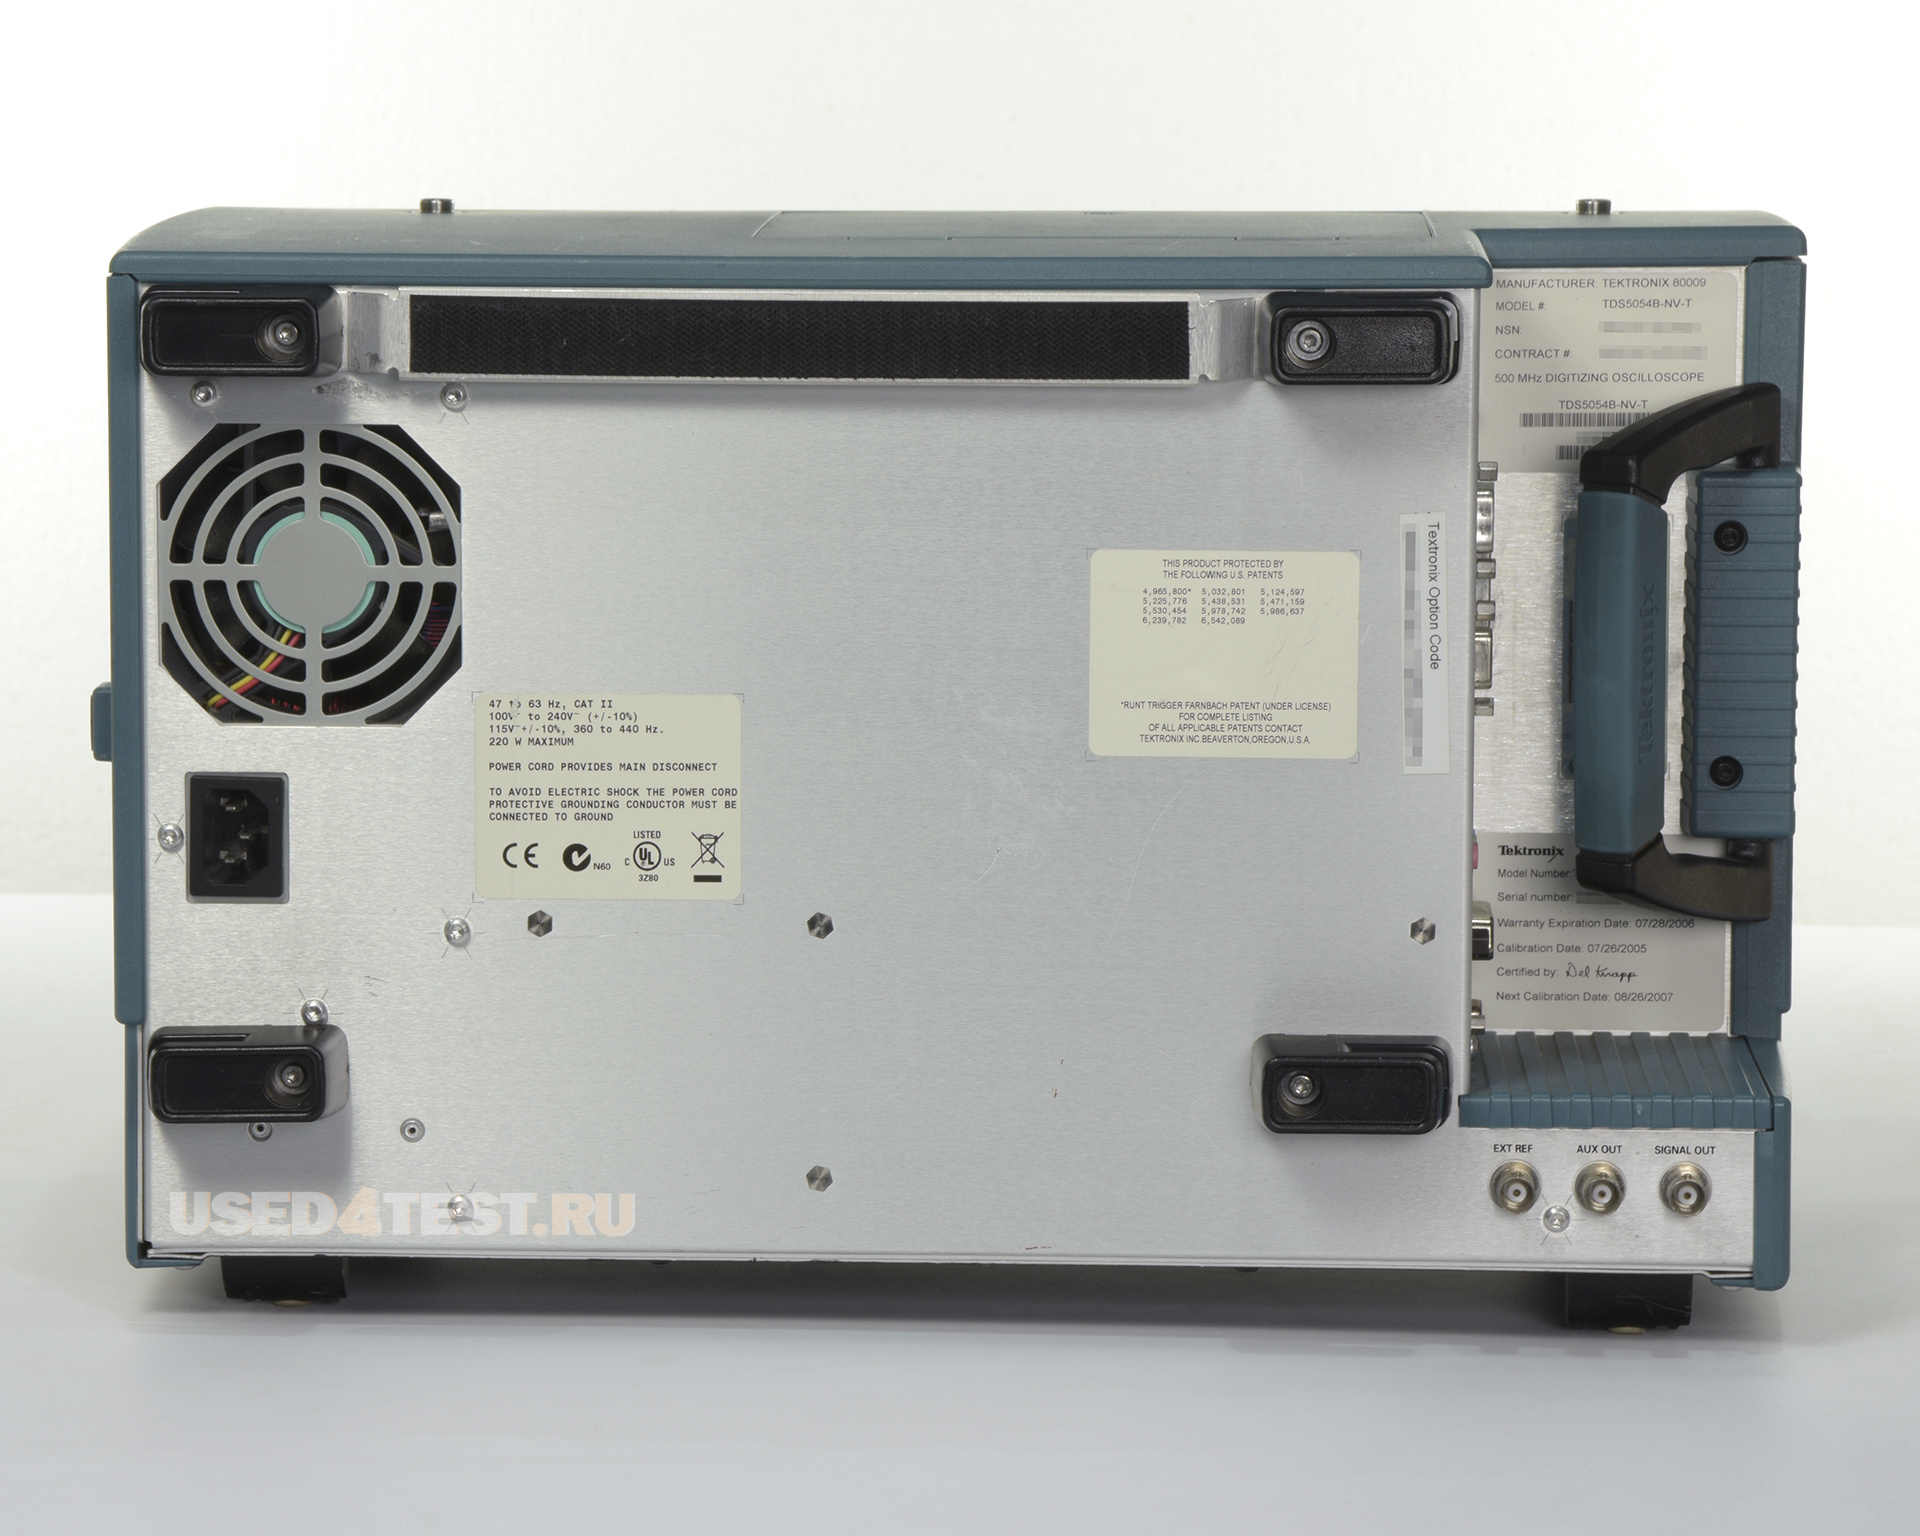 Цифровой осциллограф
 Tektronix TDS5054B-NV-T
 с полосой пропускания 500 МГц, 4 канала 

 Стоимость указана в Рублях DDP Москва по безналичному расчету включая НДС 20%

 